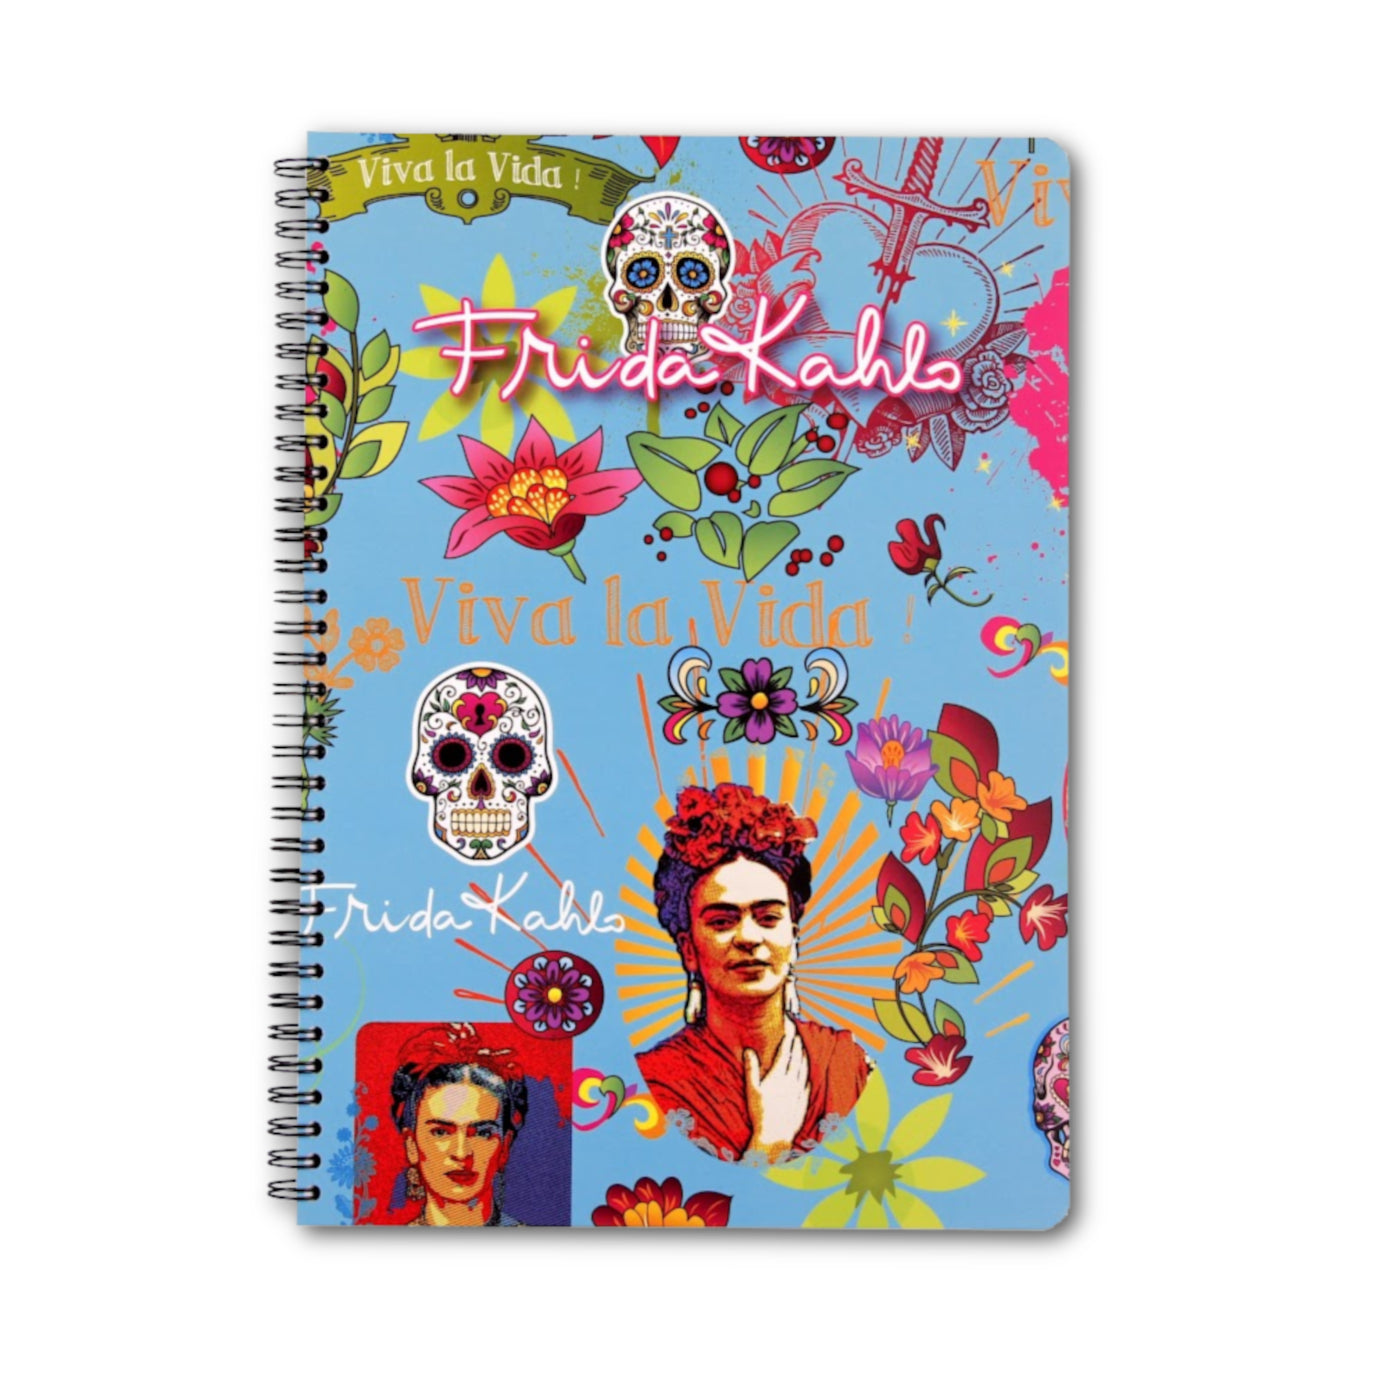 Clairefontaine Frida Kahlo Notebooks